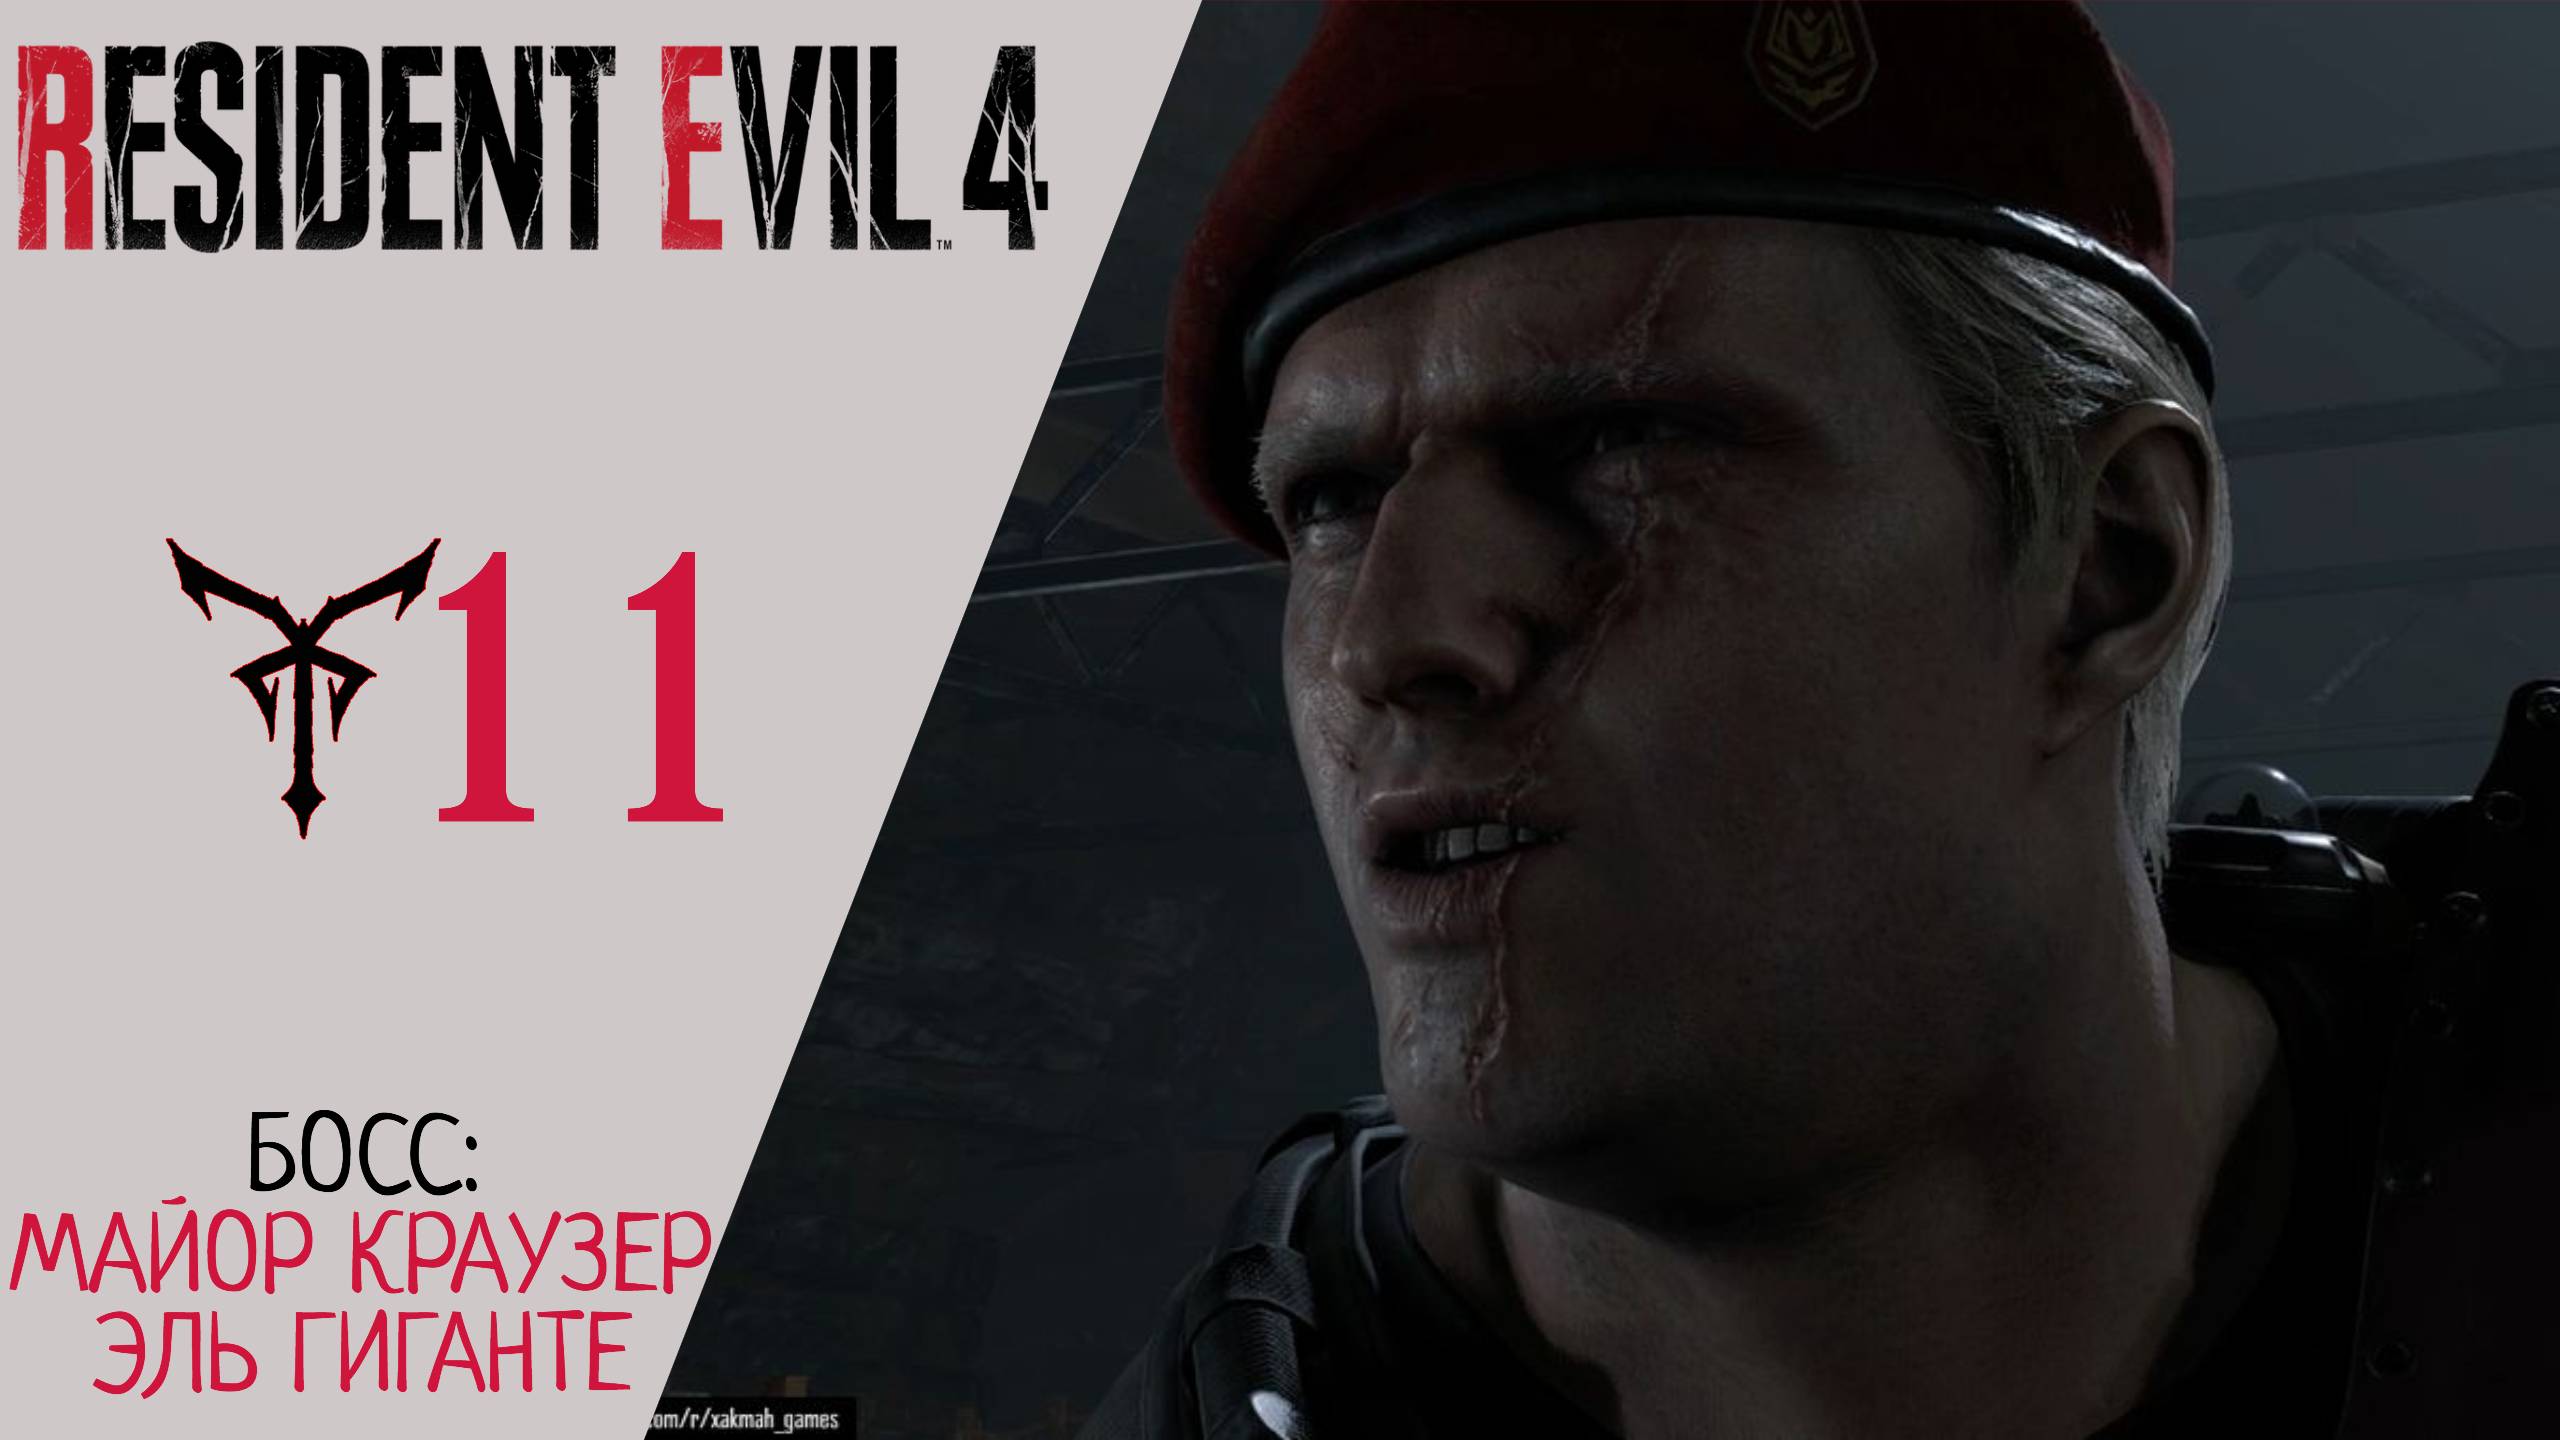 ? Прохождение Resident Evil 4 Remake Глава 11: Эль Гиганте, Майор Краузер | Резидент Эвил 4 Ремейк